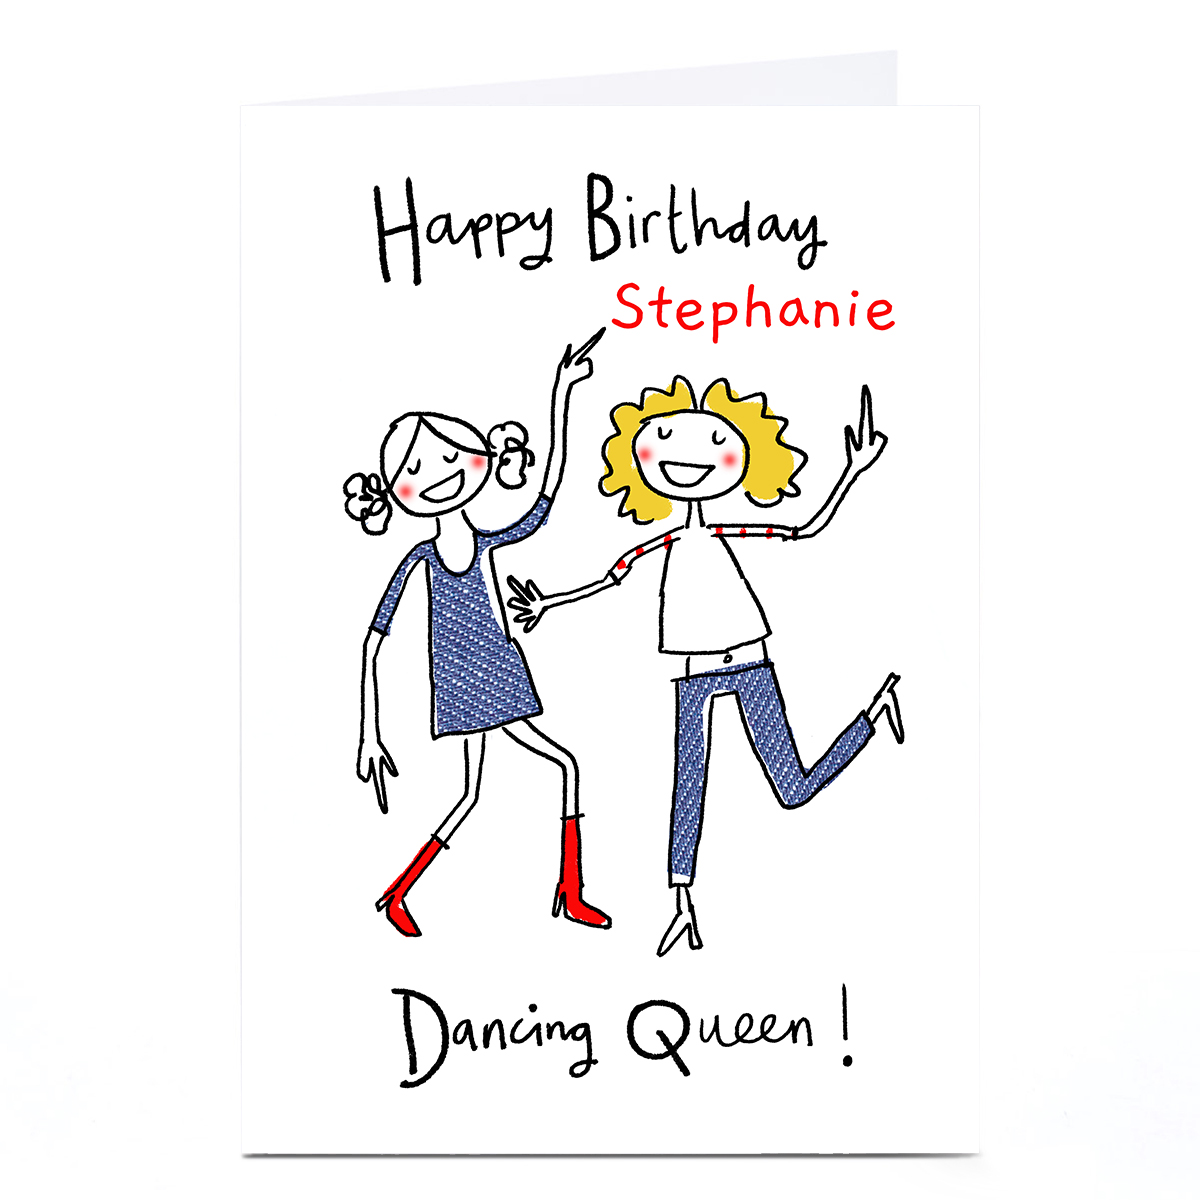 Personalised Lindsay Kirby Birthday Card - Dancing Queen